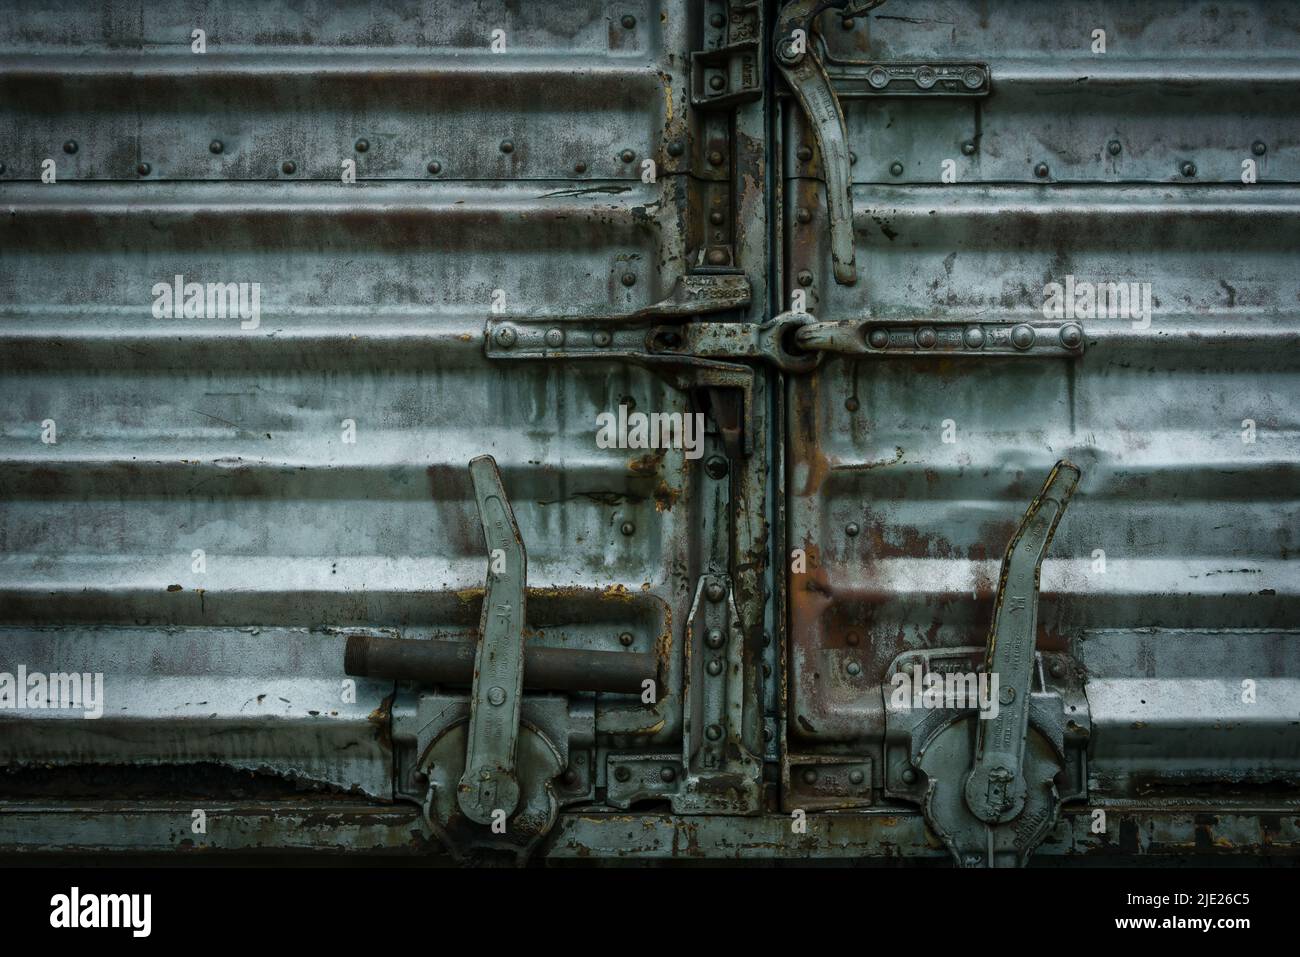 Material rodante de ferrocarril viejo y maltratado con cerradura de puerta en américa, Estados Unidos Foto de stock